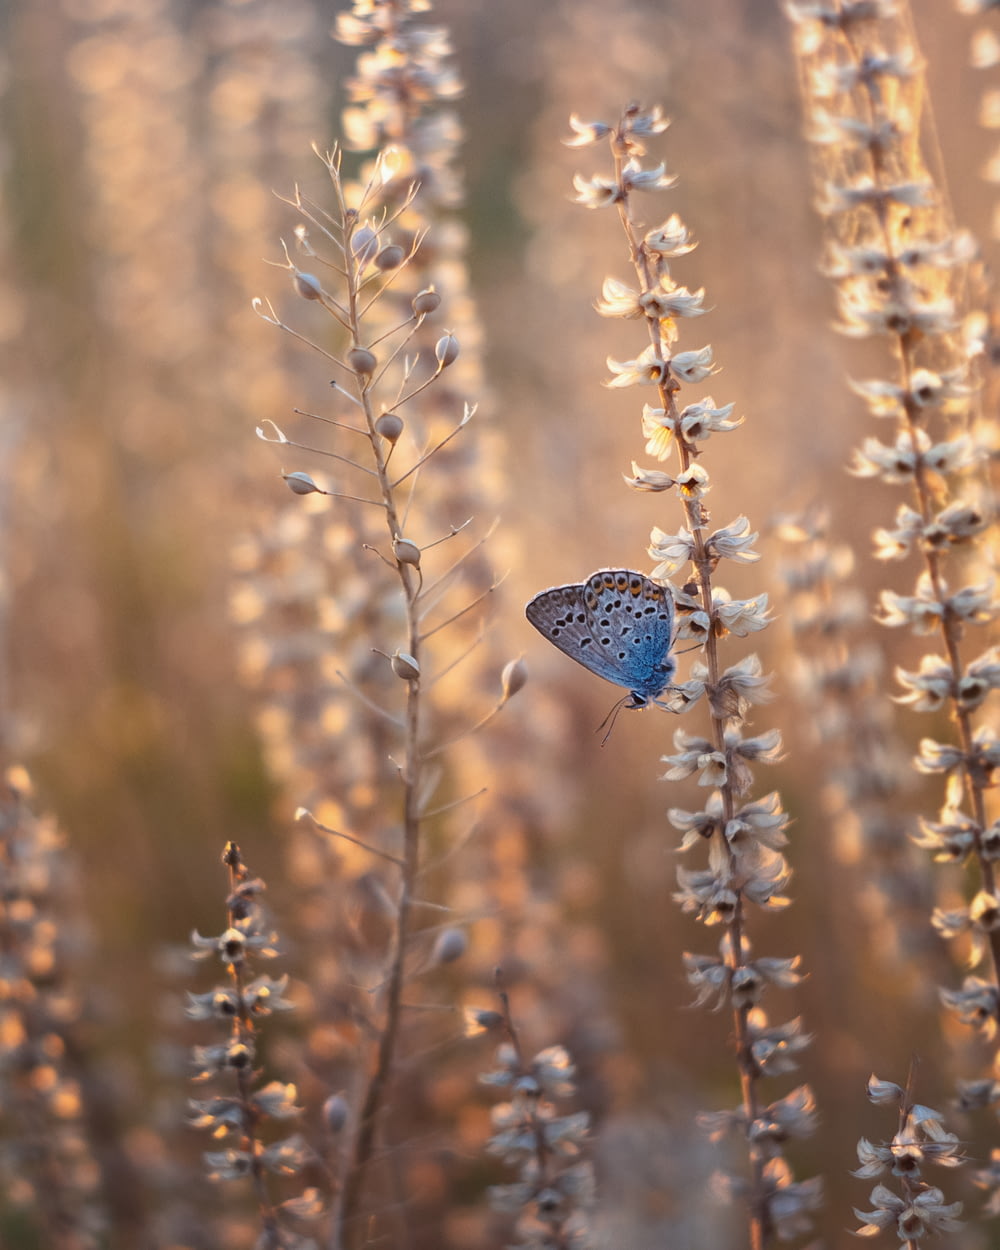 borboleta azul empoleirada na planta marrom durante o dia